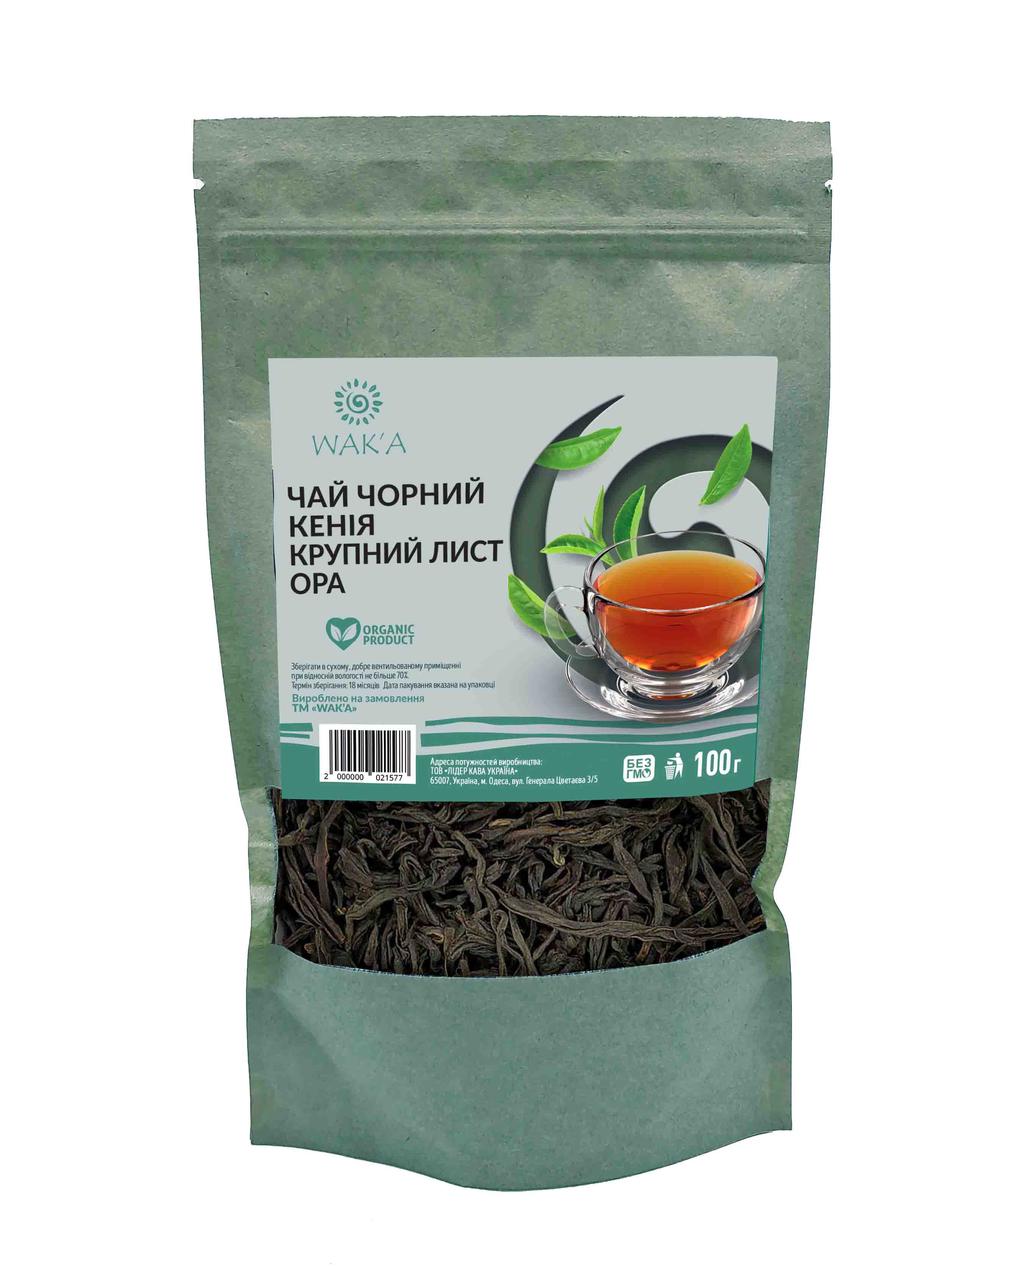 Чай чорний кенійсьский крупнолистовий OPA, 100г